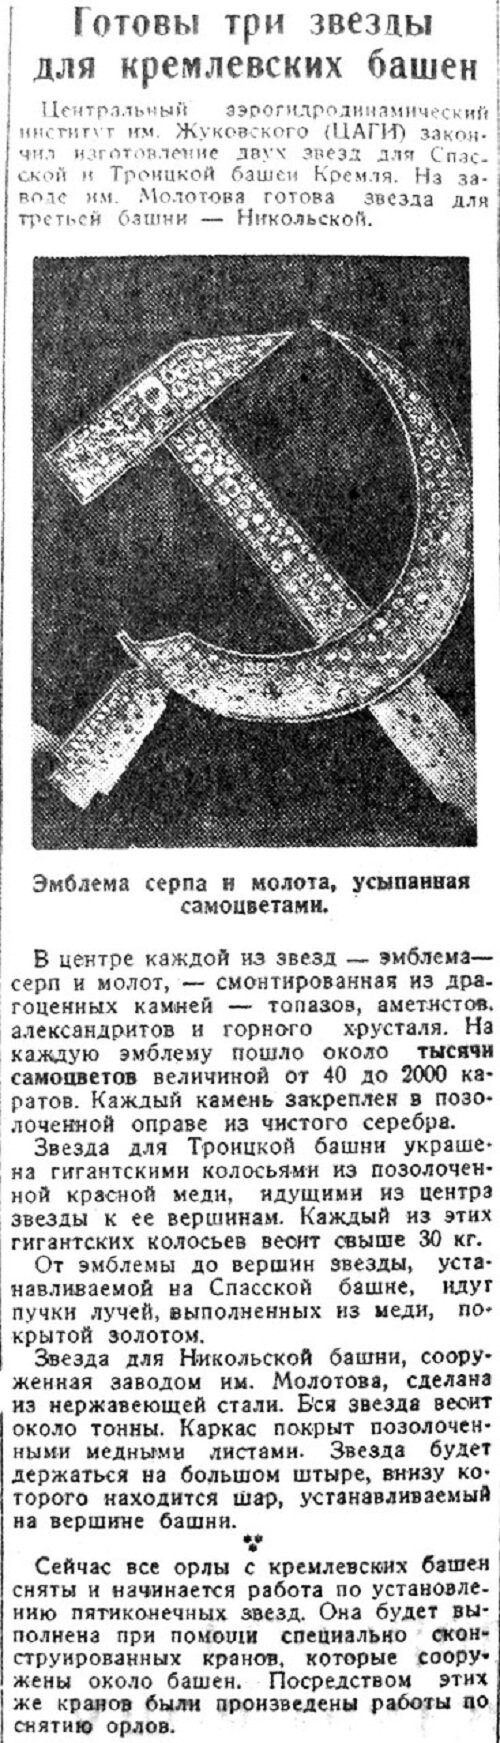 «Гудок», 23 октября 1935 г.